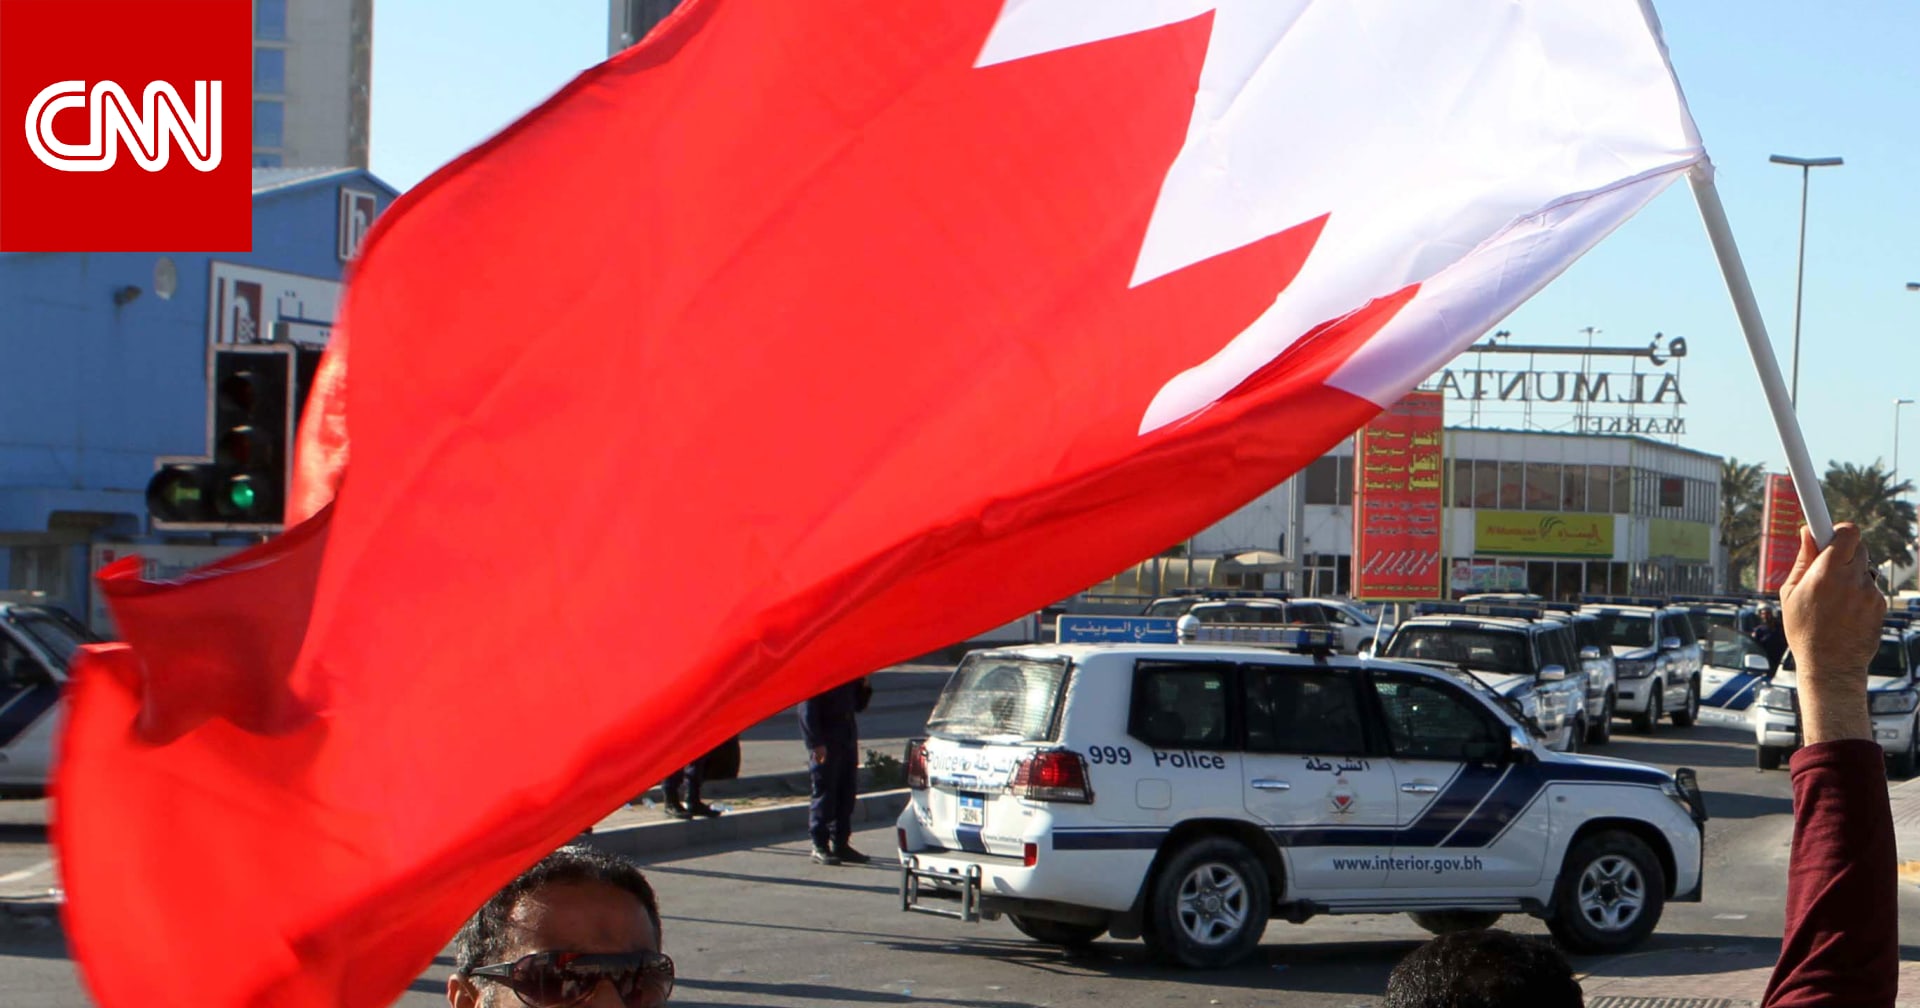 البحرين.. تداول فيديو لشخص "طعن بالثوابت الدينية وروج لمعلومات تاريخية مغلوطة" والداخلية ترد